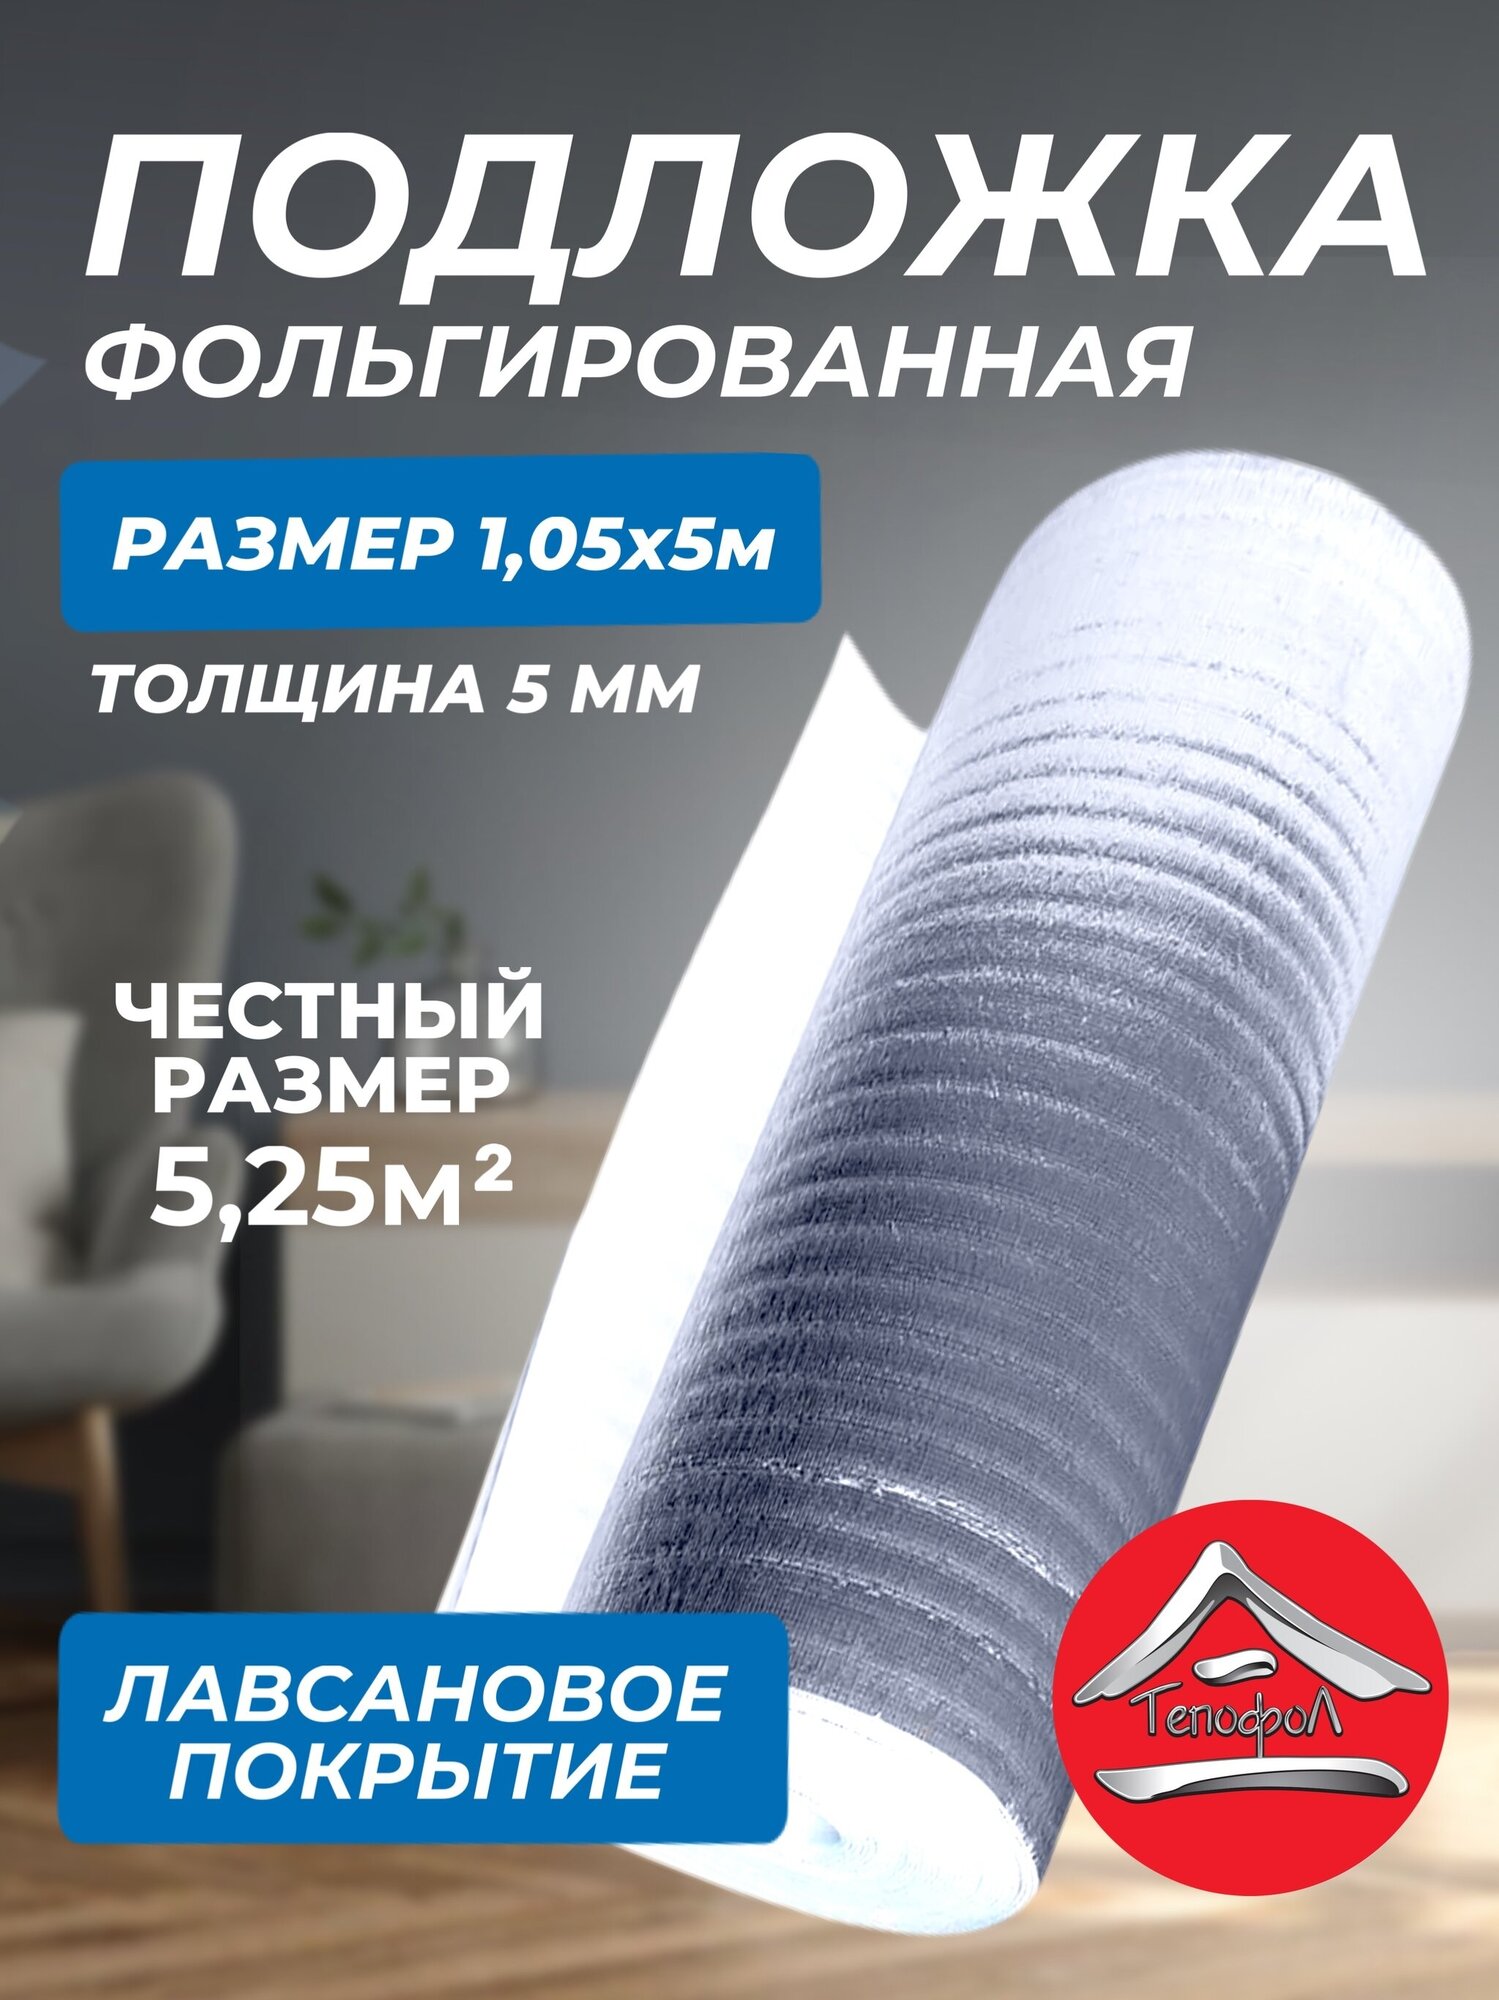 Теплоизоляция с отражающей алюминиевой фольгой Тепофол 5 мм, 1.05x5 м